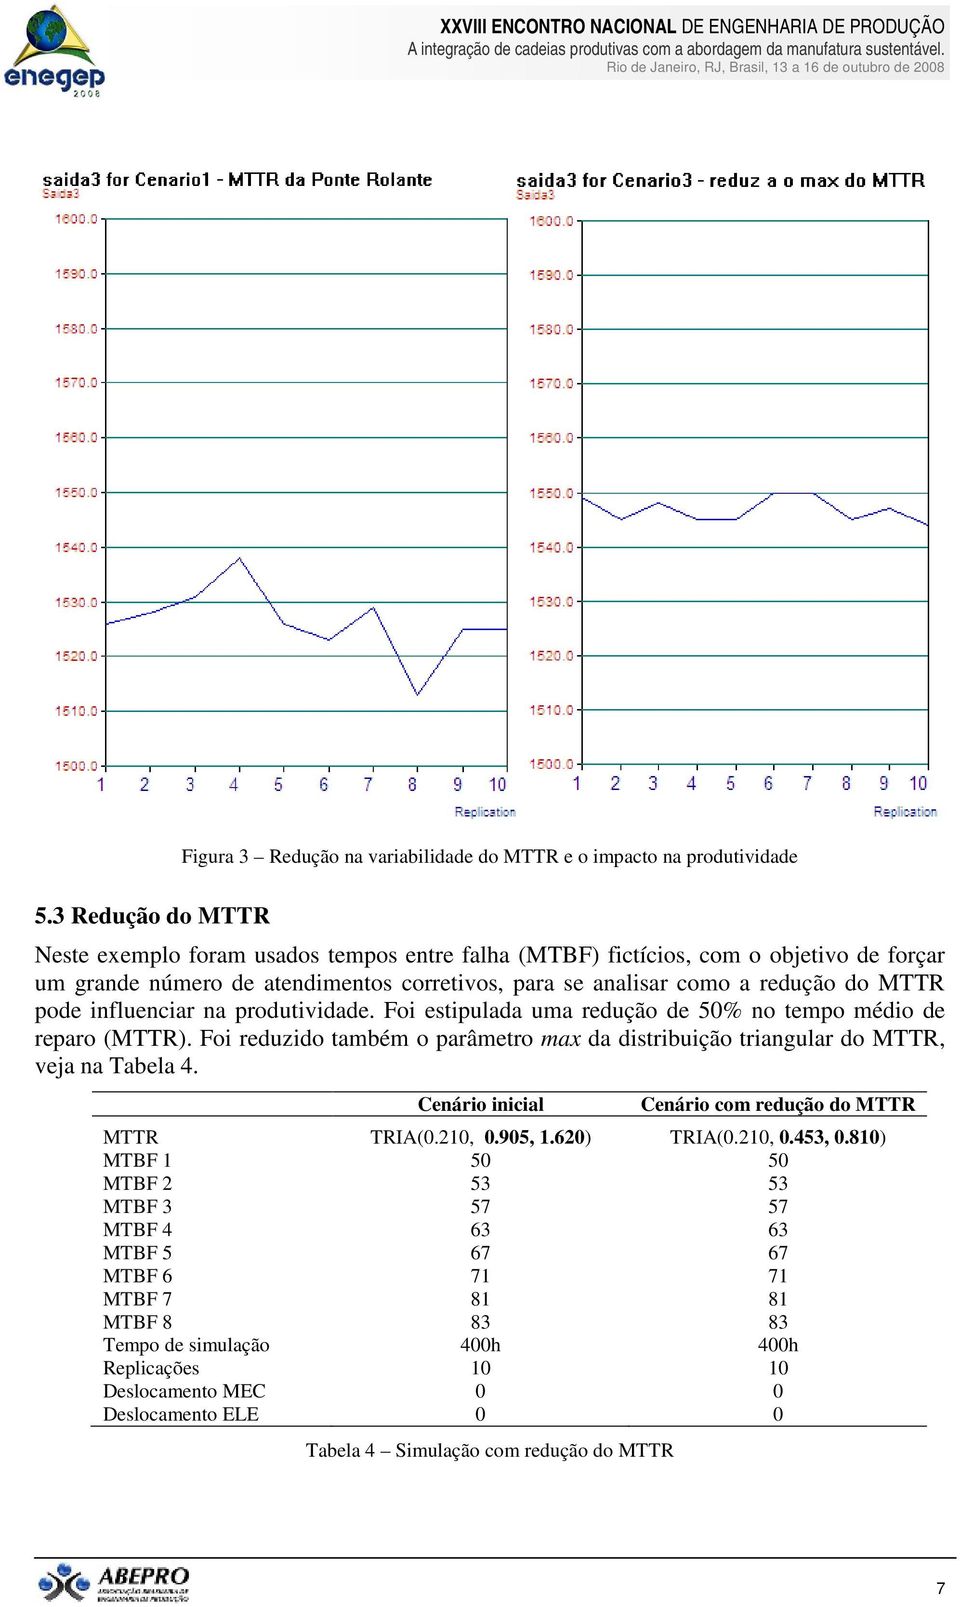 influenciar na produtividade. Foi estipulada uma redução de 50% no tempo médio de reparo (MTTR). Foi reduzido também o parâmetro max da distribuição triangular do MTTR, veja na Tabela 4.